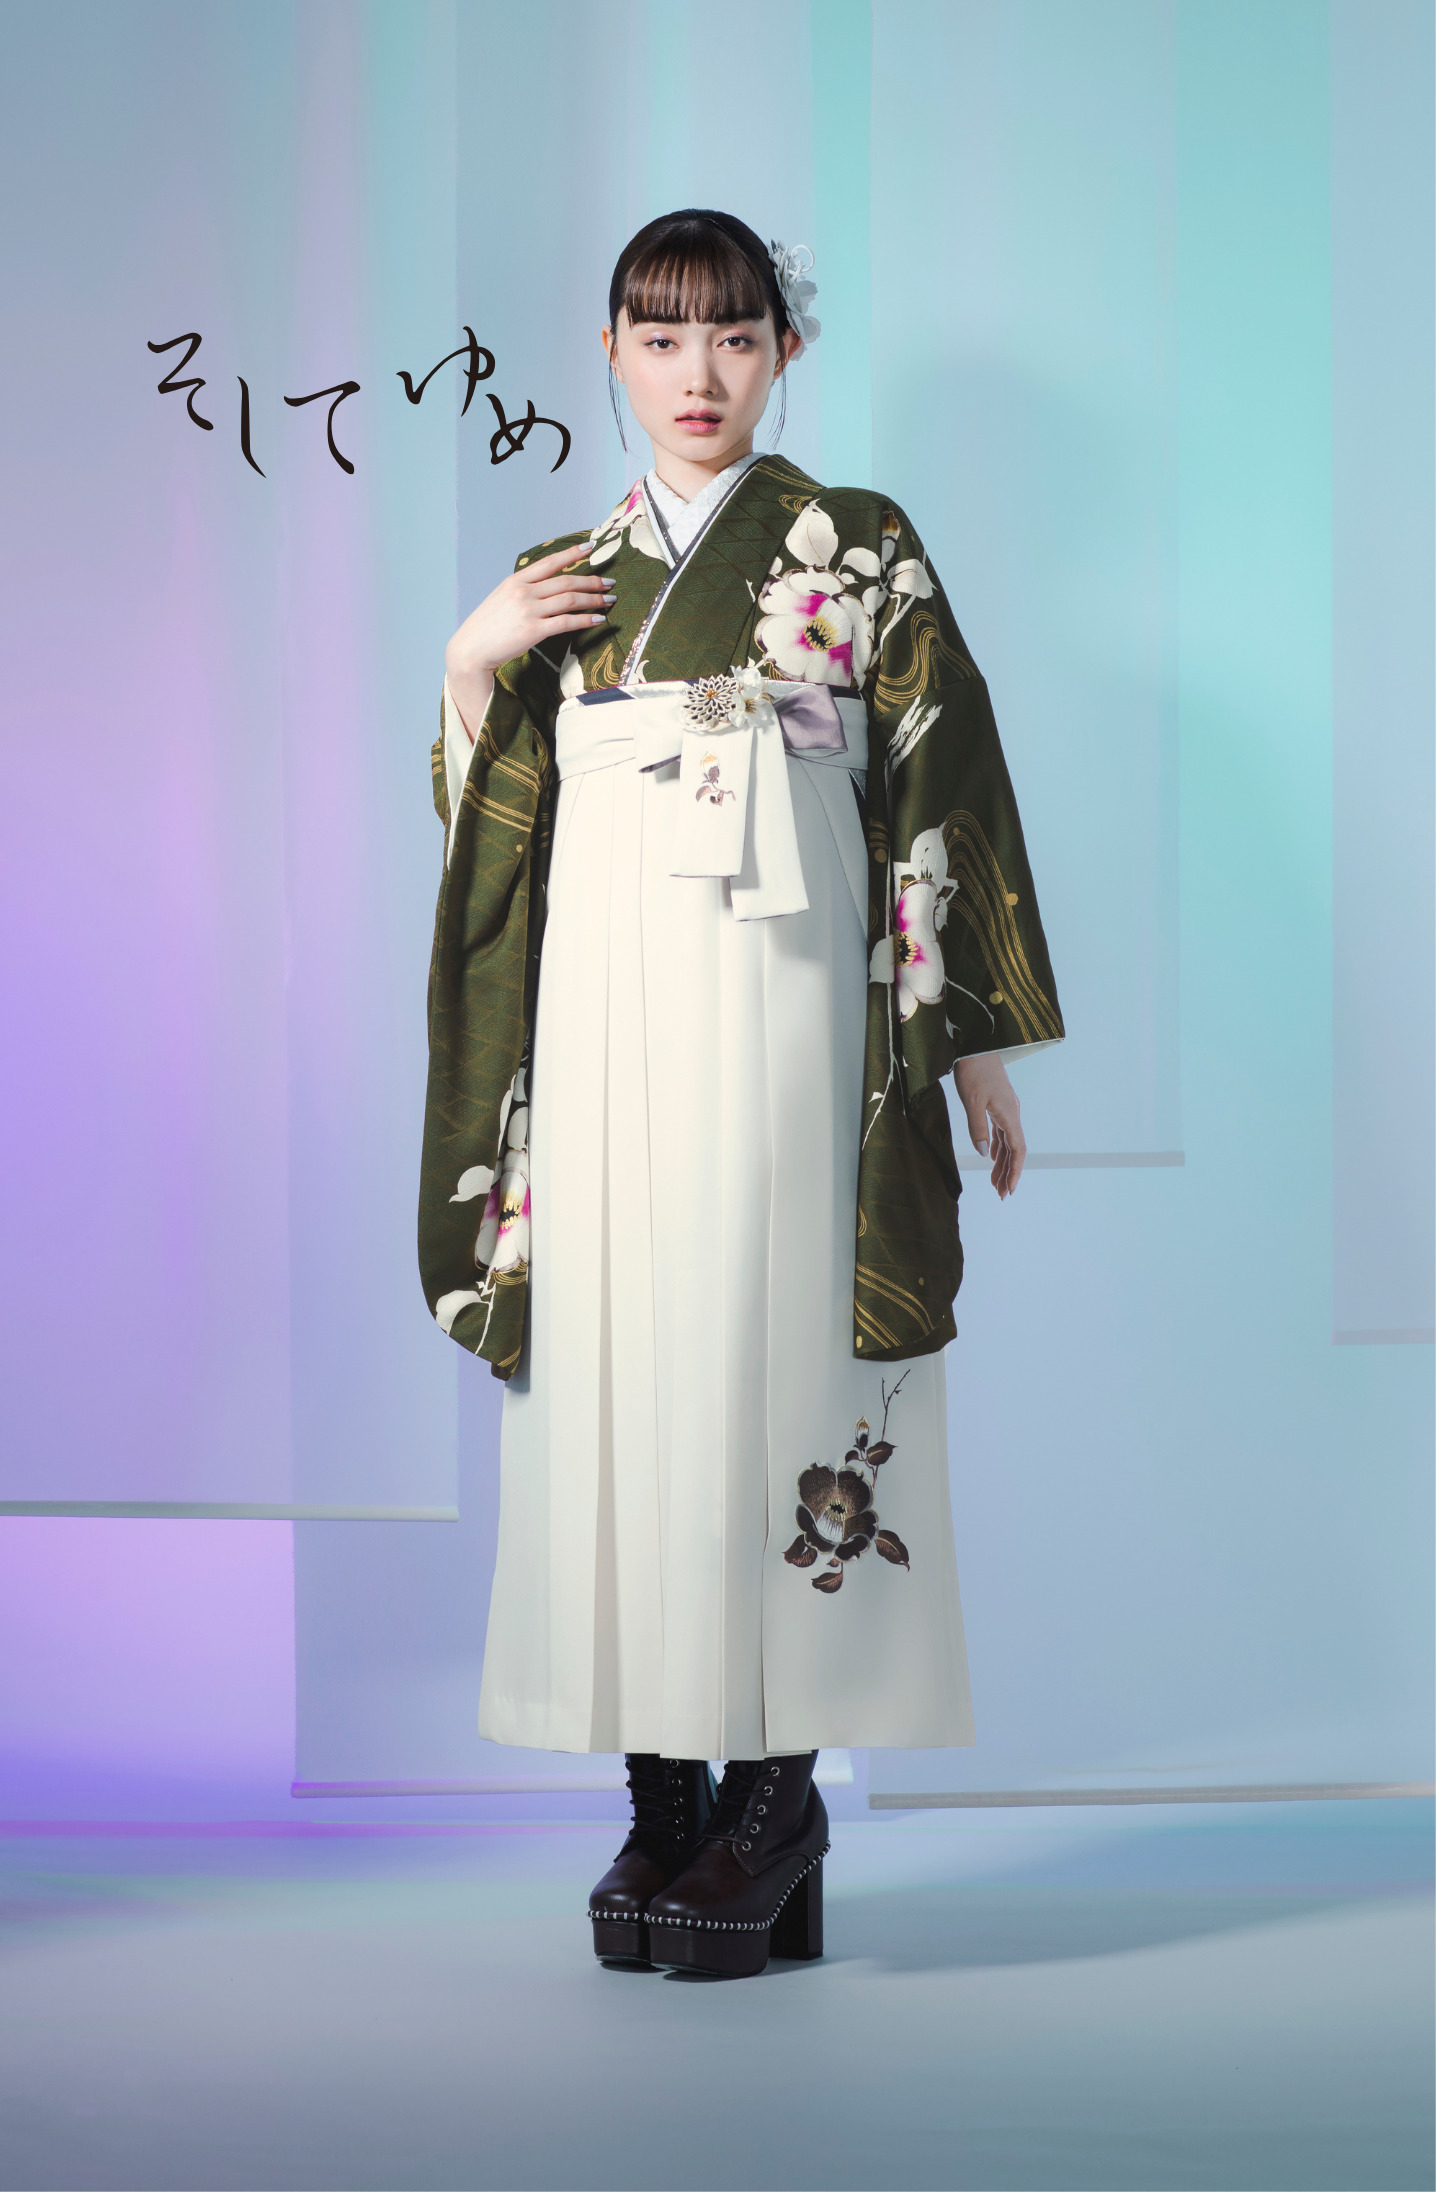 そしてゆめブランドの、緑地に白の花柄の二尺袖と、白の袴の女性用卒業式袴を着用した全身写真